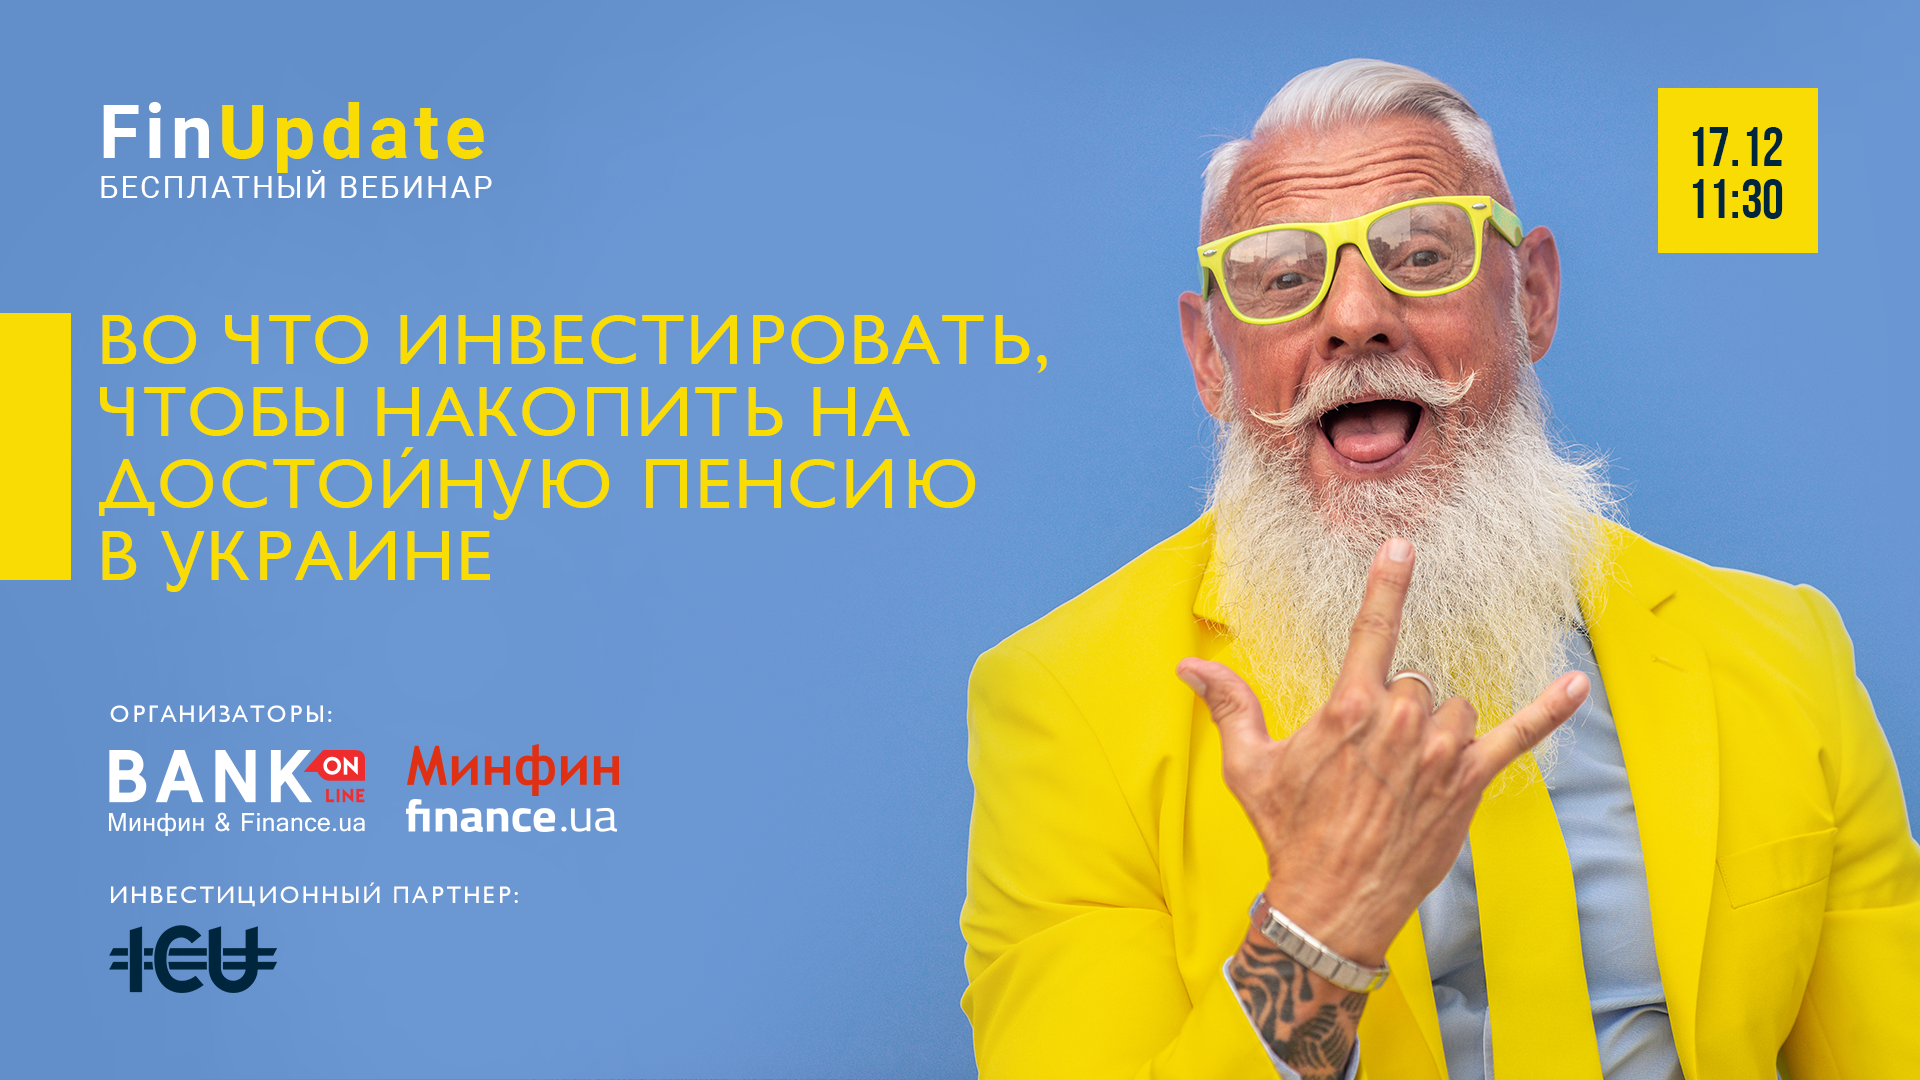 Во что инвестировать сегодня, чтобы накопить на достойную пенсию в Украине